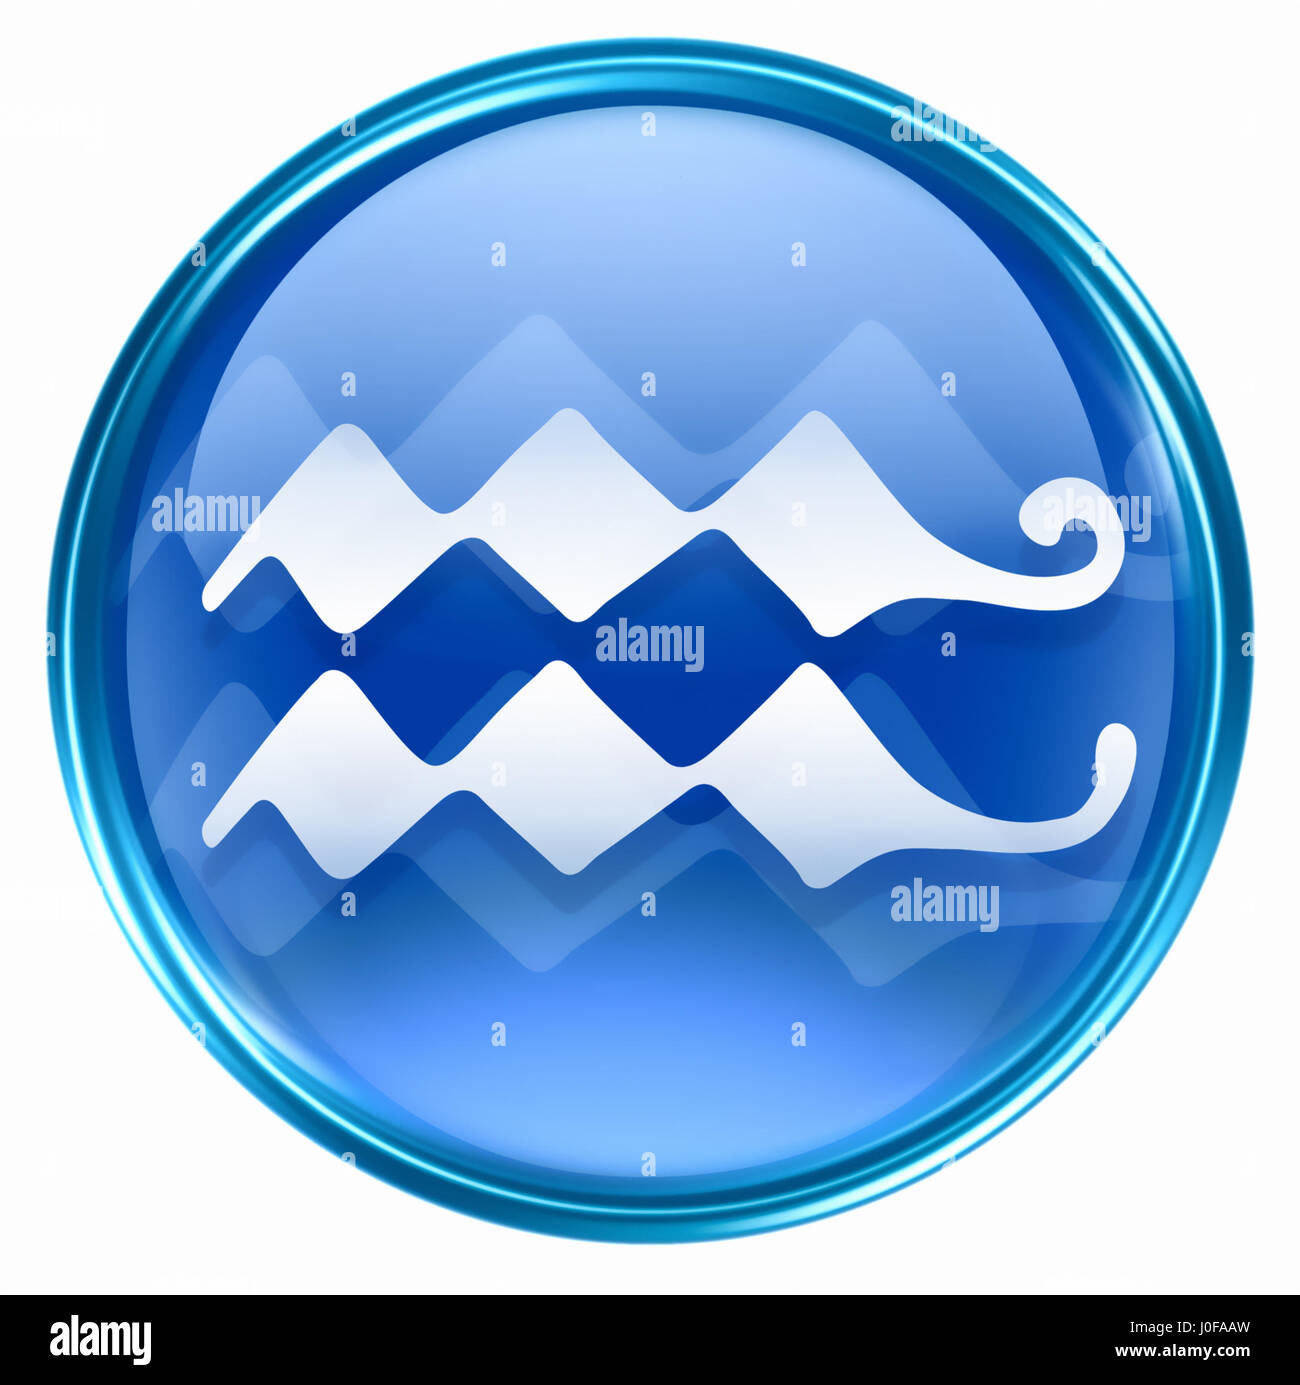 Aquarius zodiac button icon, isolated on white background. Stock Photo